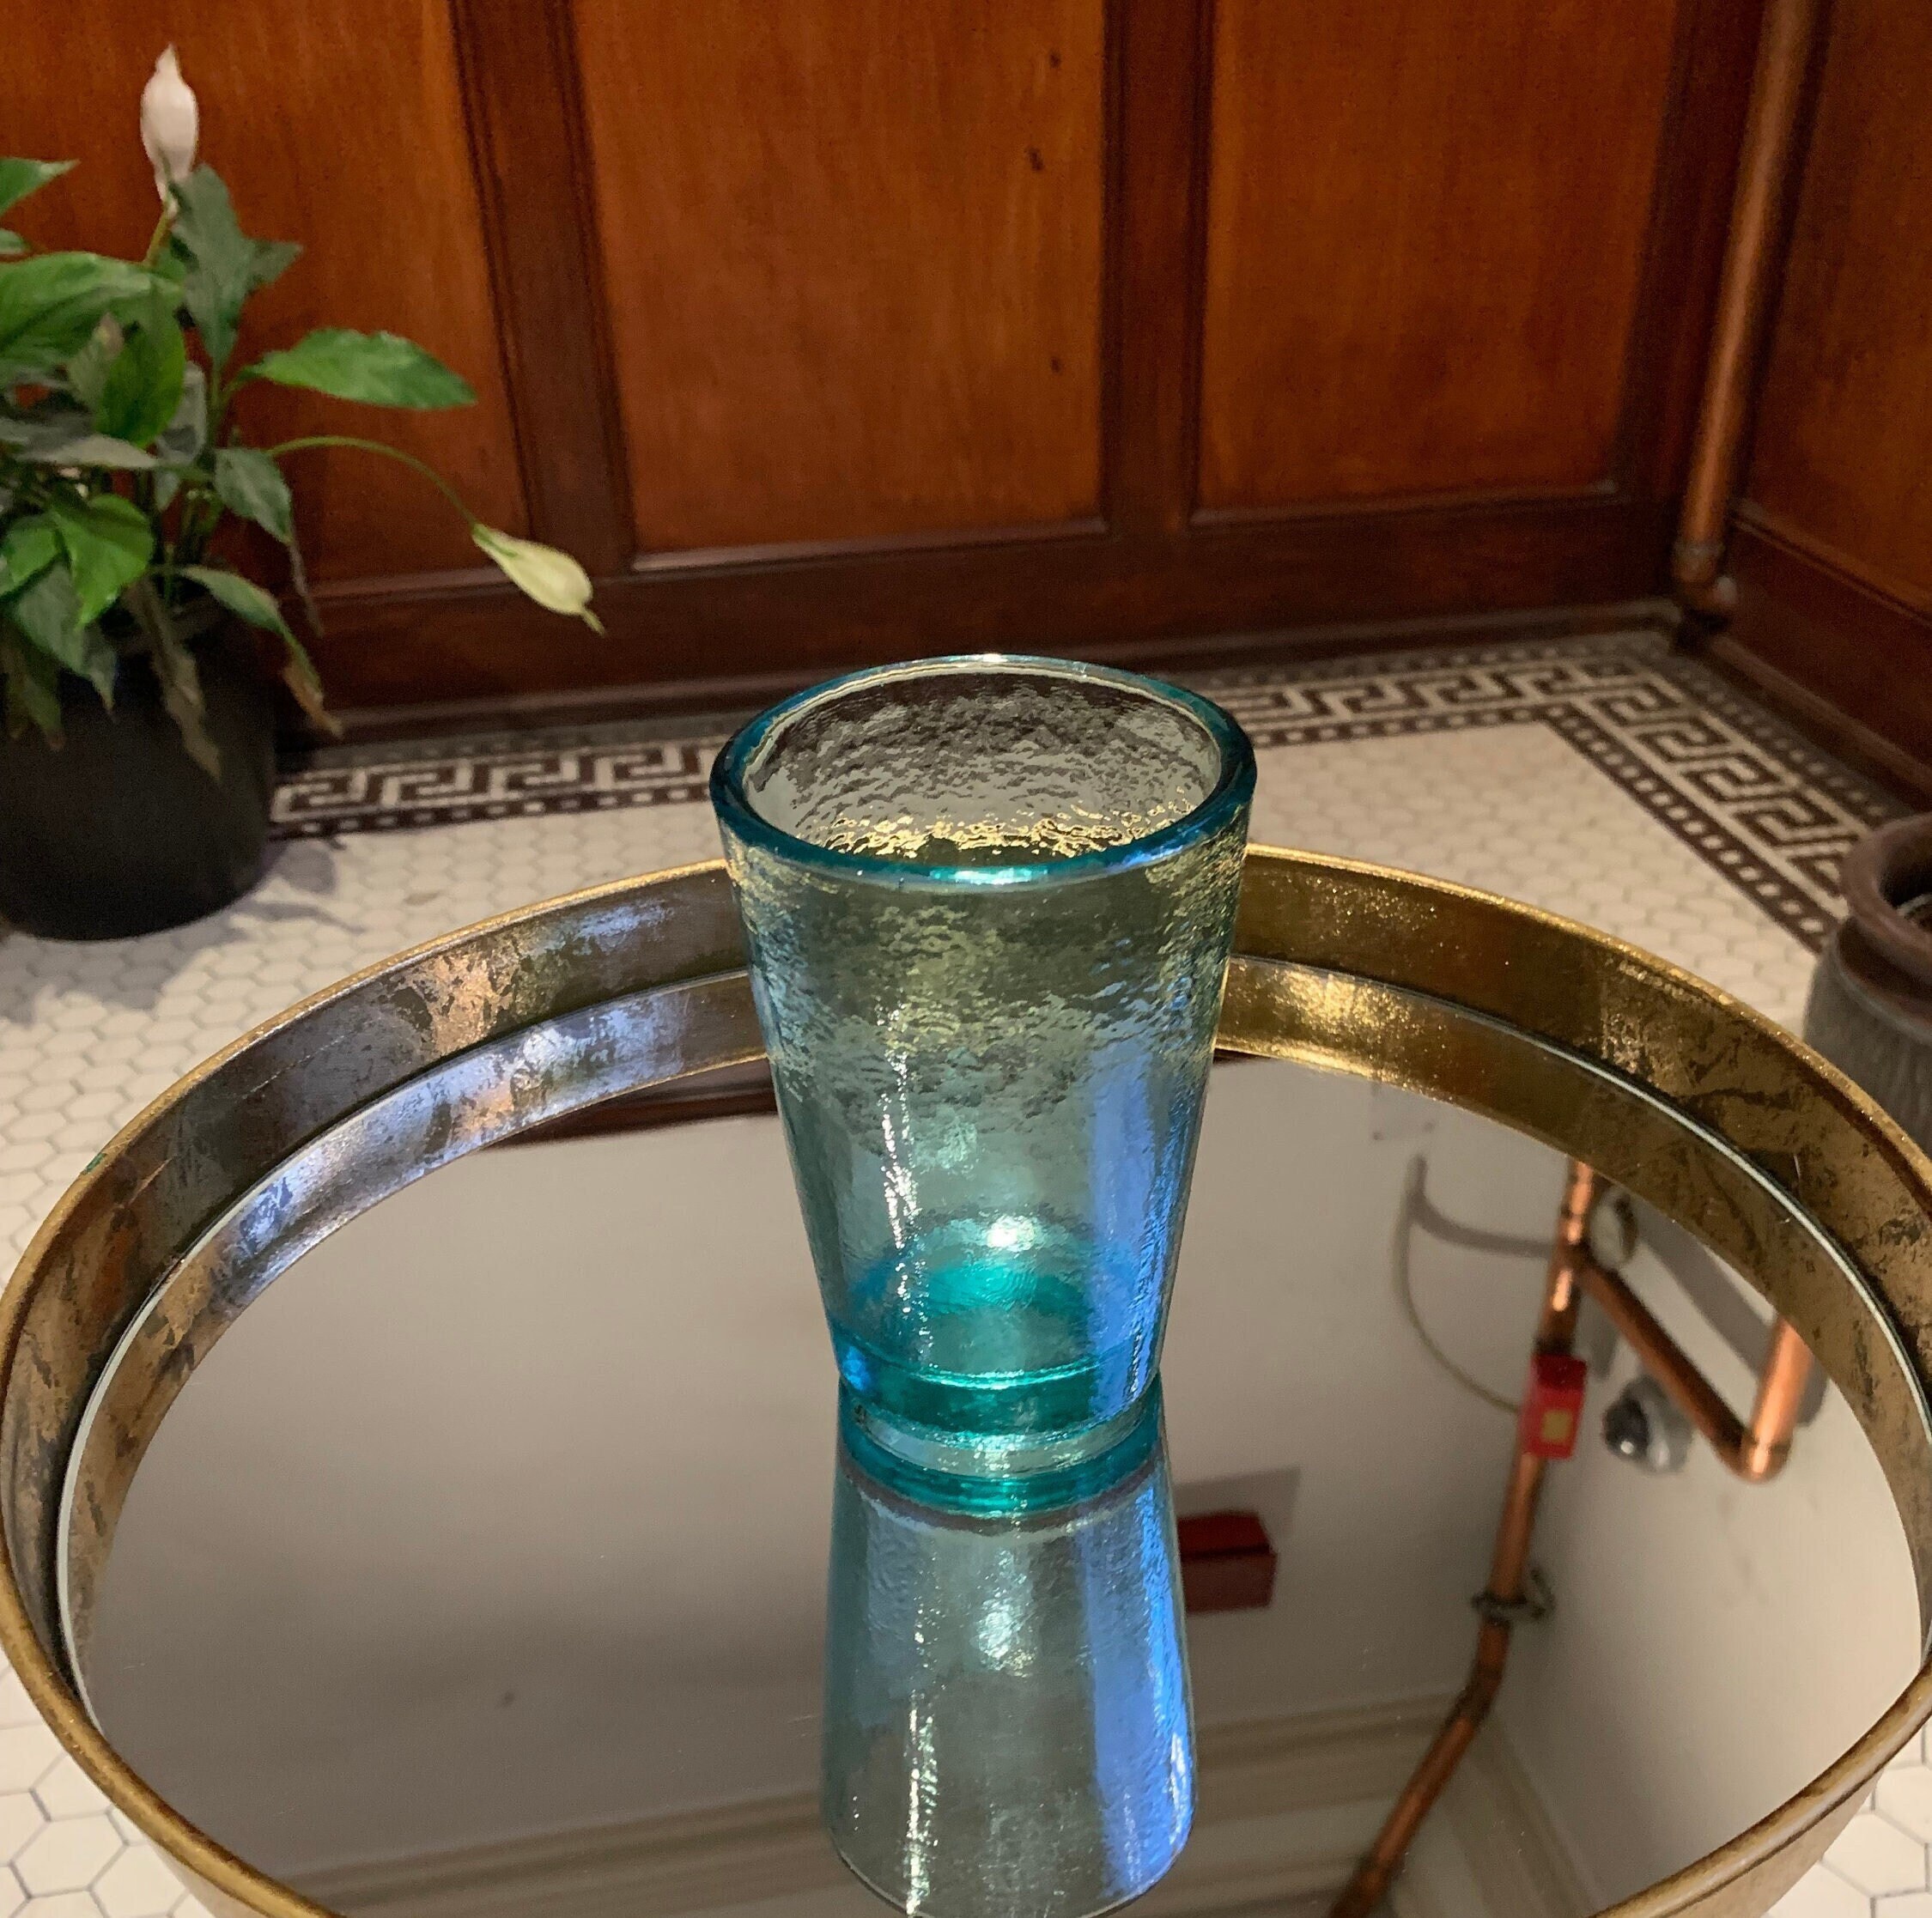 Botella cristal personalizada Ceres de Aquaneo ecoglass 50 cl o 75 cl